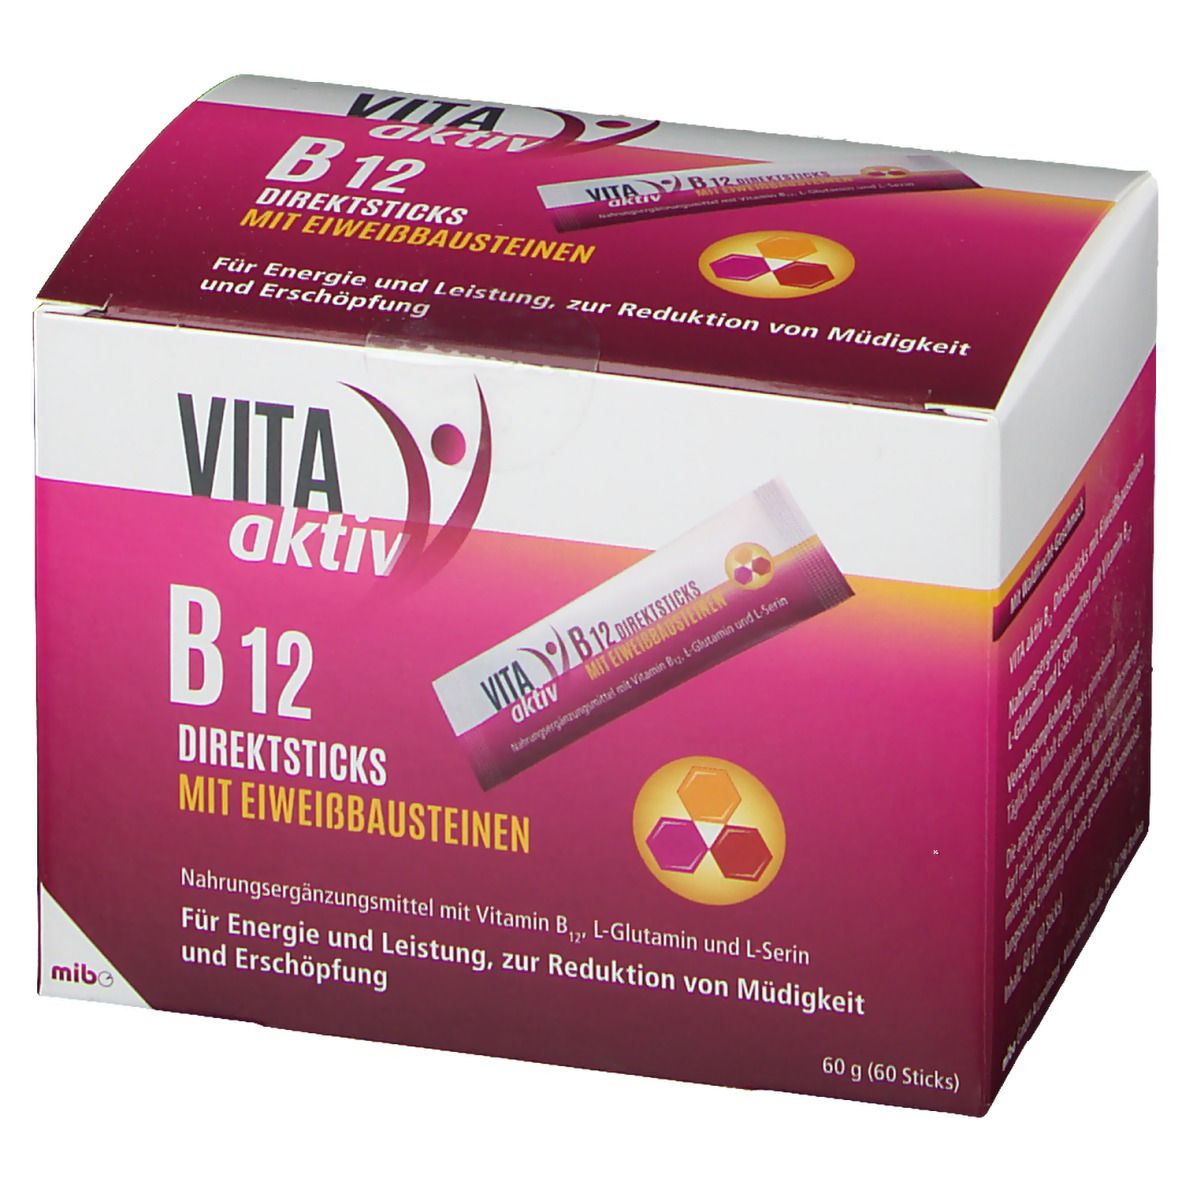 VITA aktiv B12 DIREKTSTICKS mit Eiweißbausteinen